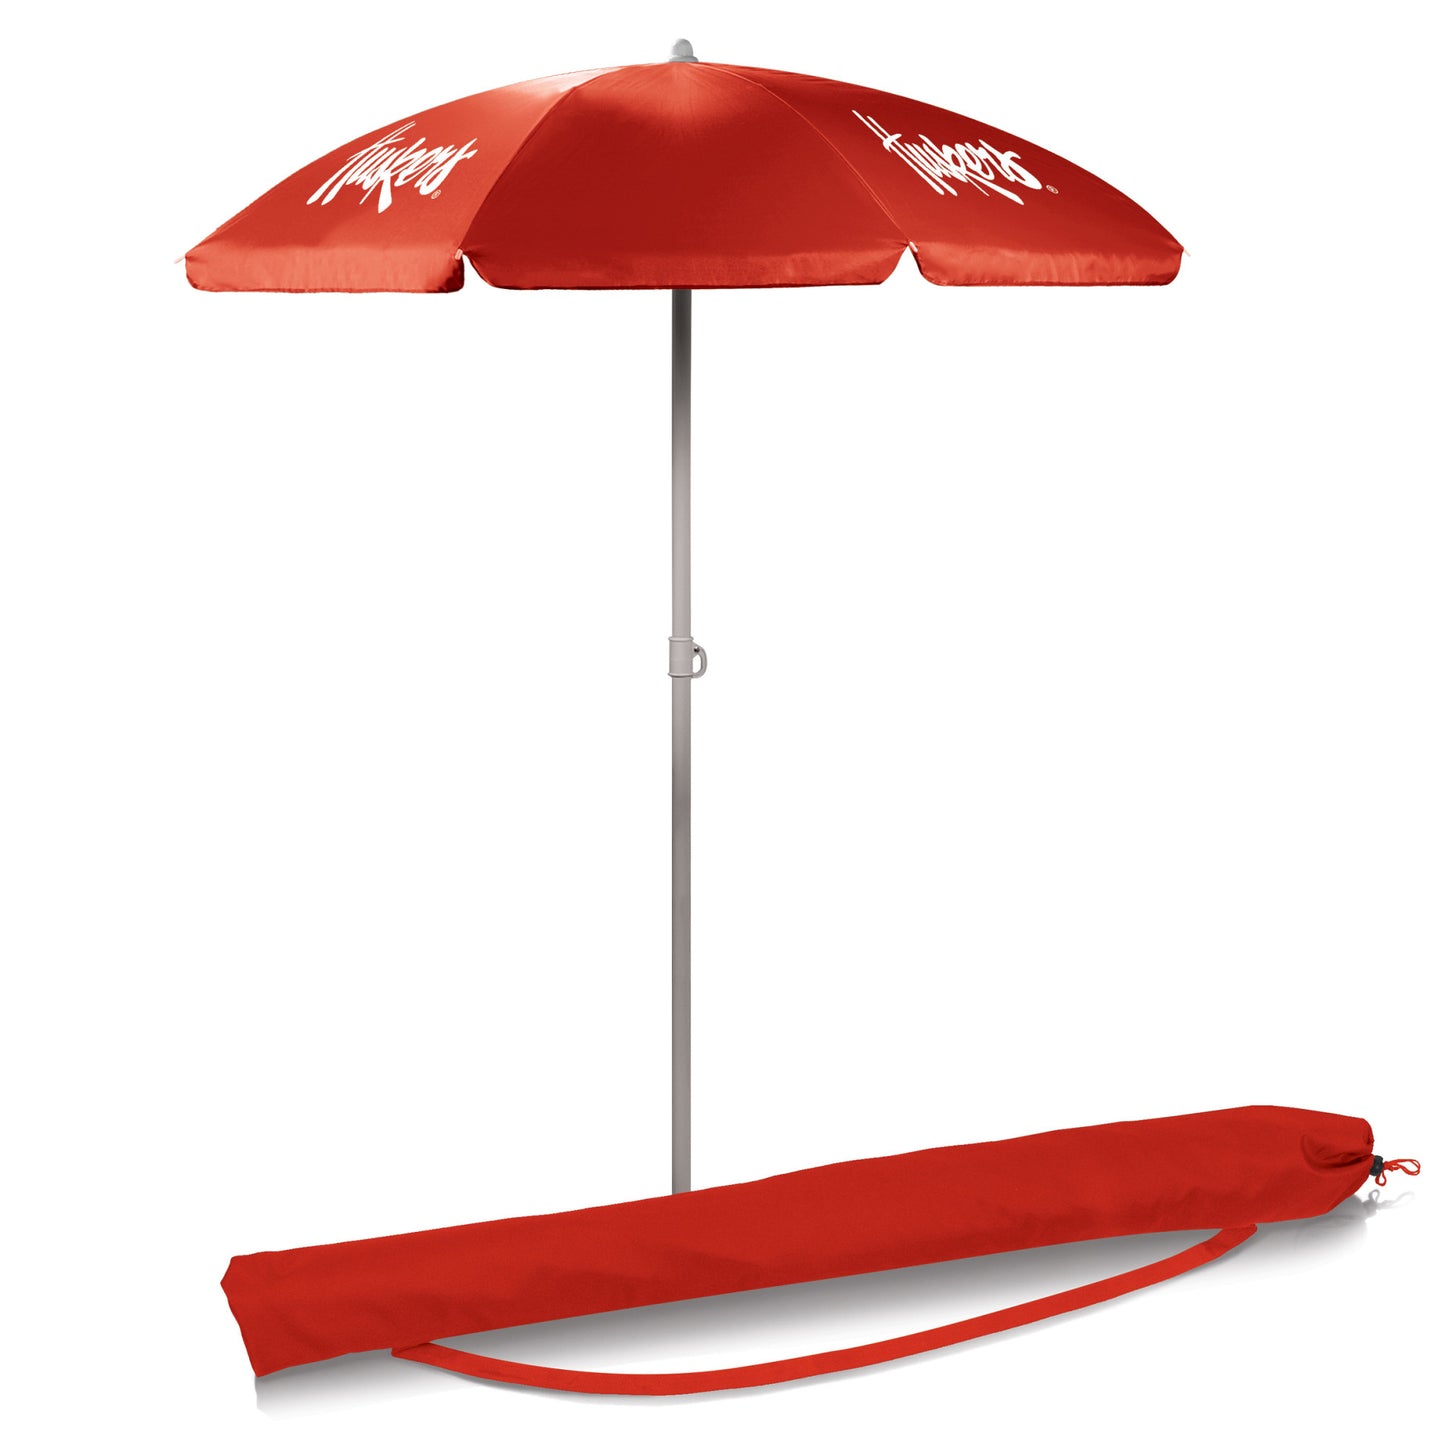 Nebraska Cornhuskers 5.5' Portable Red Beach Umbrella by Picnic Time